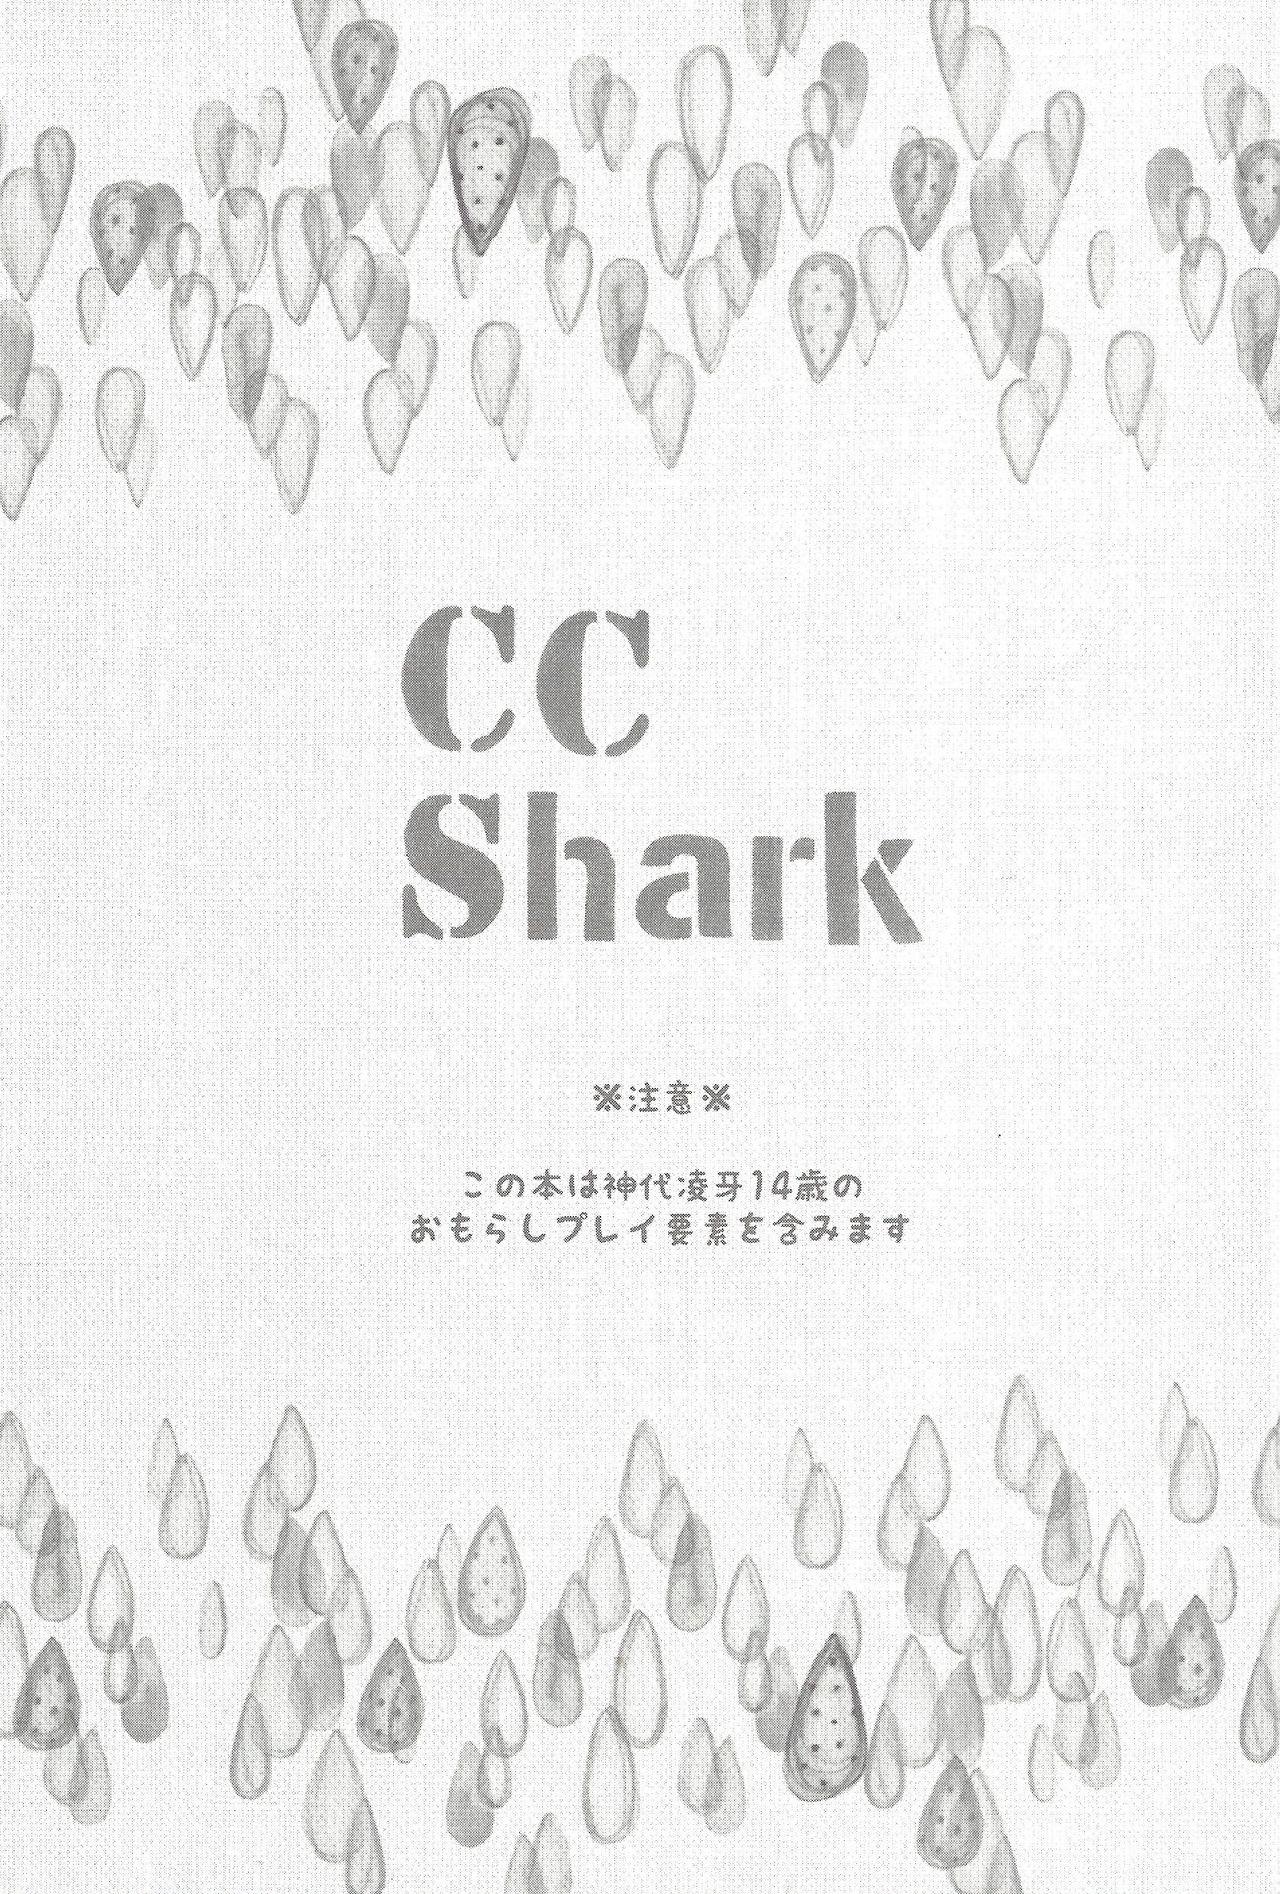 CC Shark 2 1